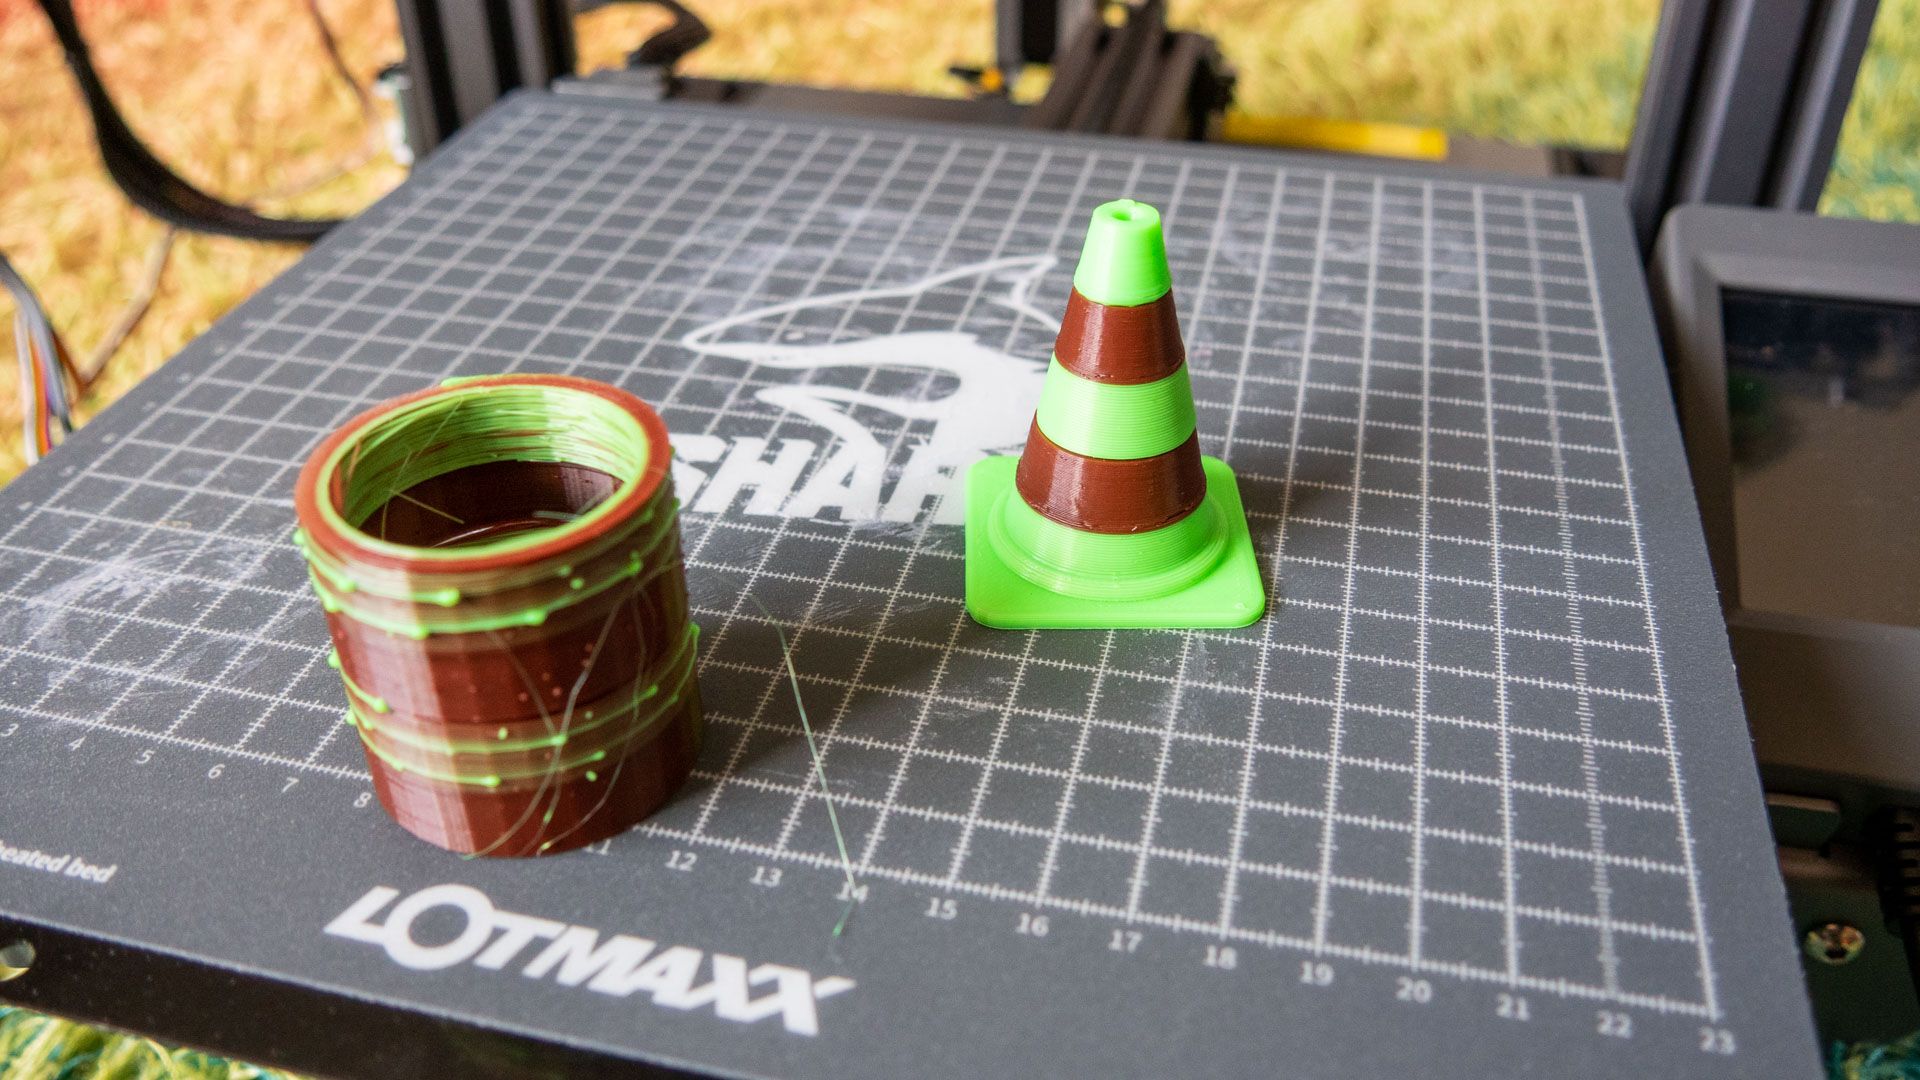 lotmaxx cone - Lotmaxx SC-10 Shark Review: affidabile stampante 3D per principianti, ma forse salta gli aggiornamenti